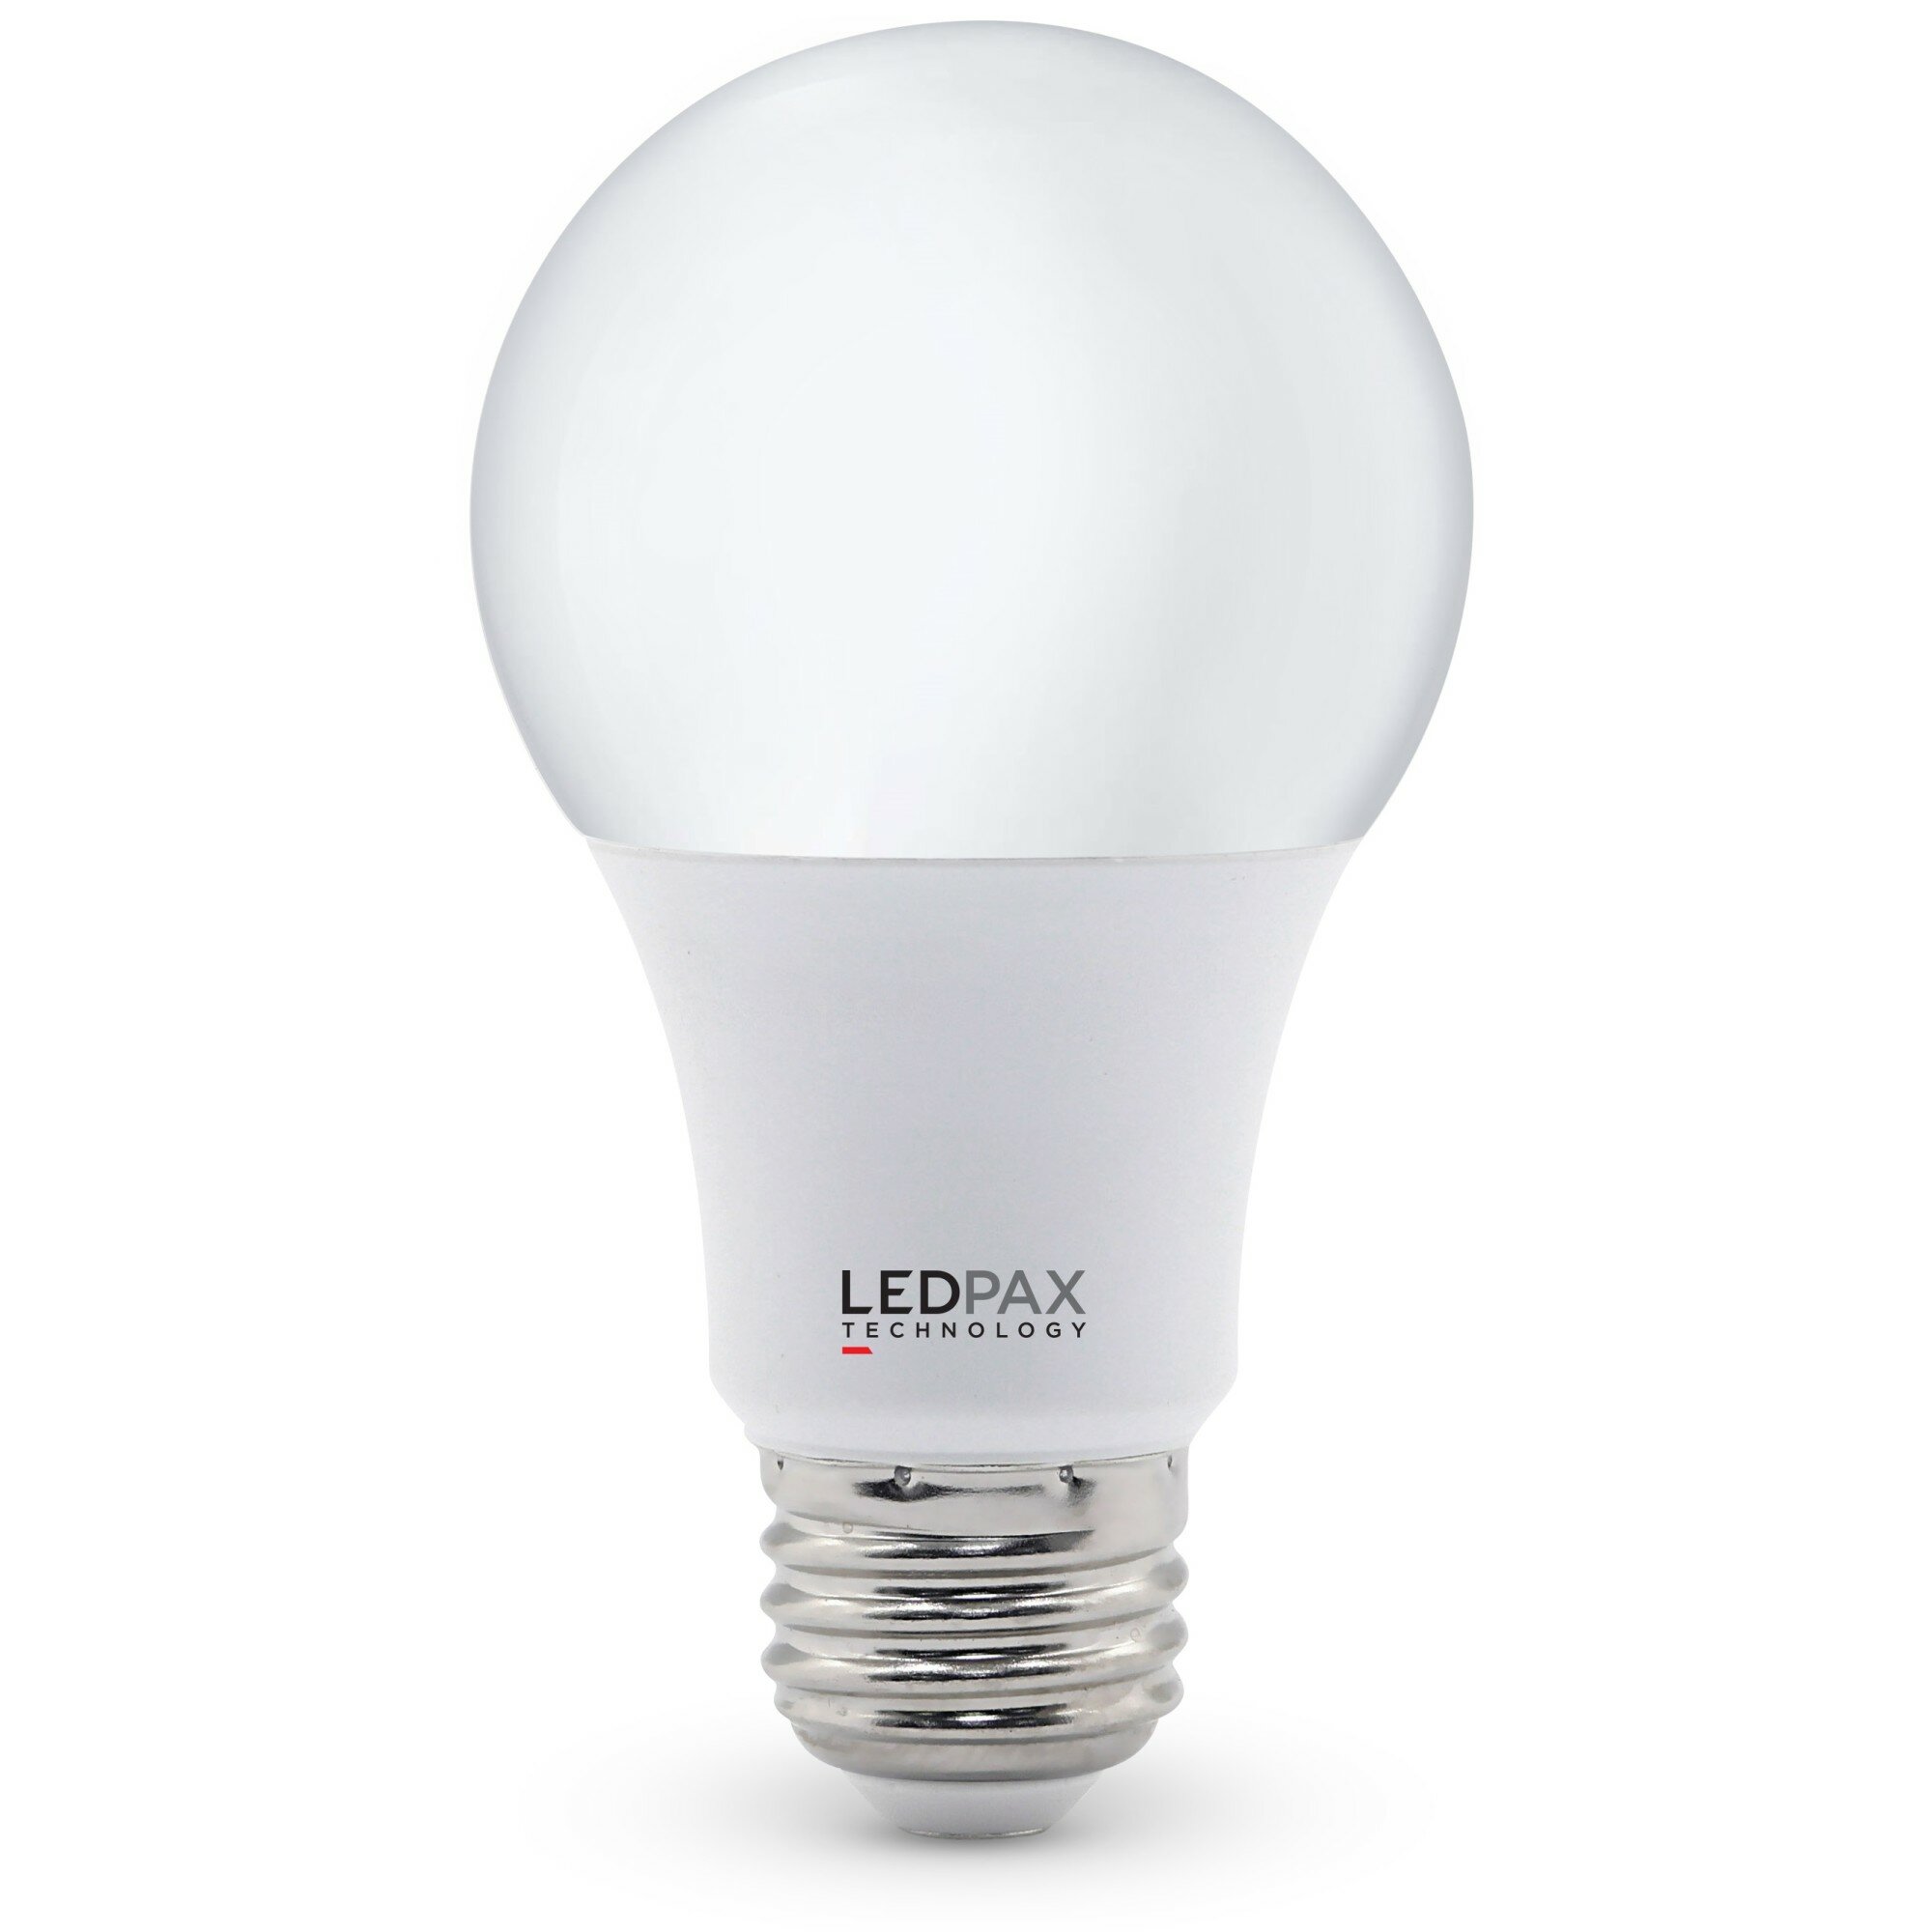 Viribright LED 25-Watt EQ B11 E26 Chandelier Frosted Light Bulb